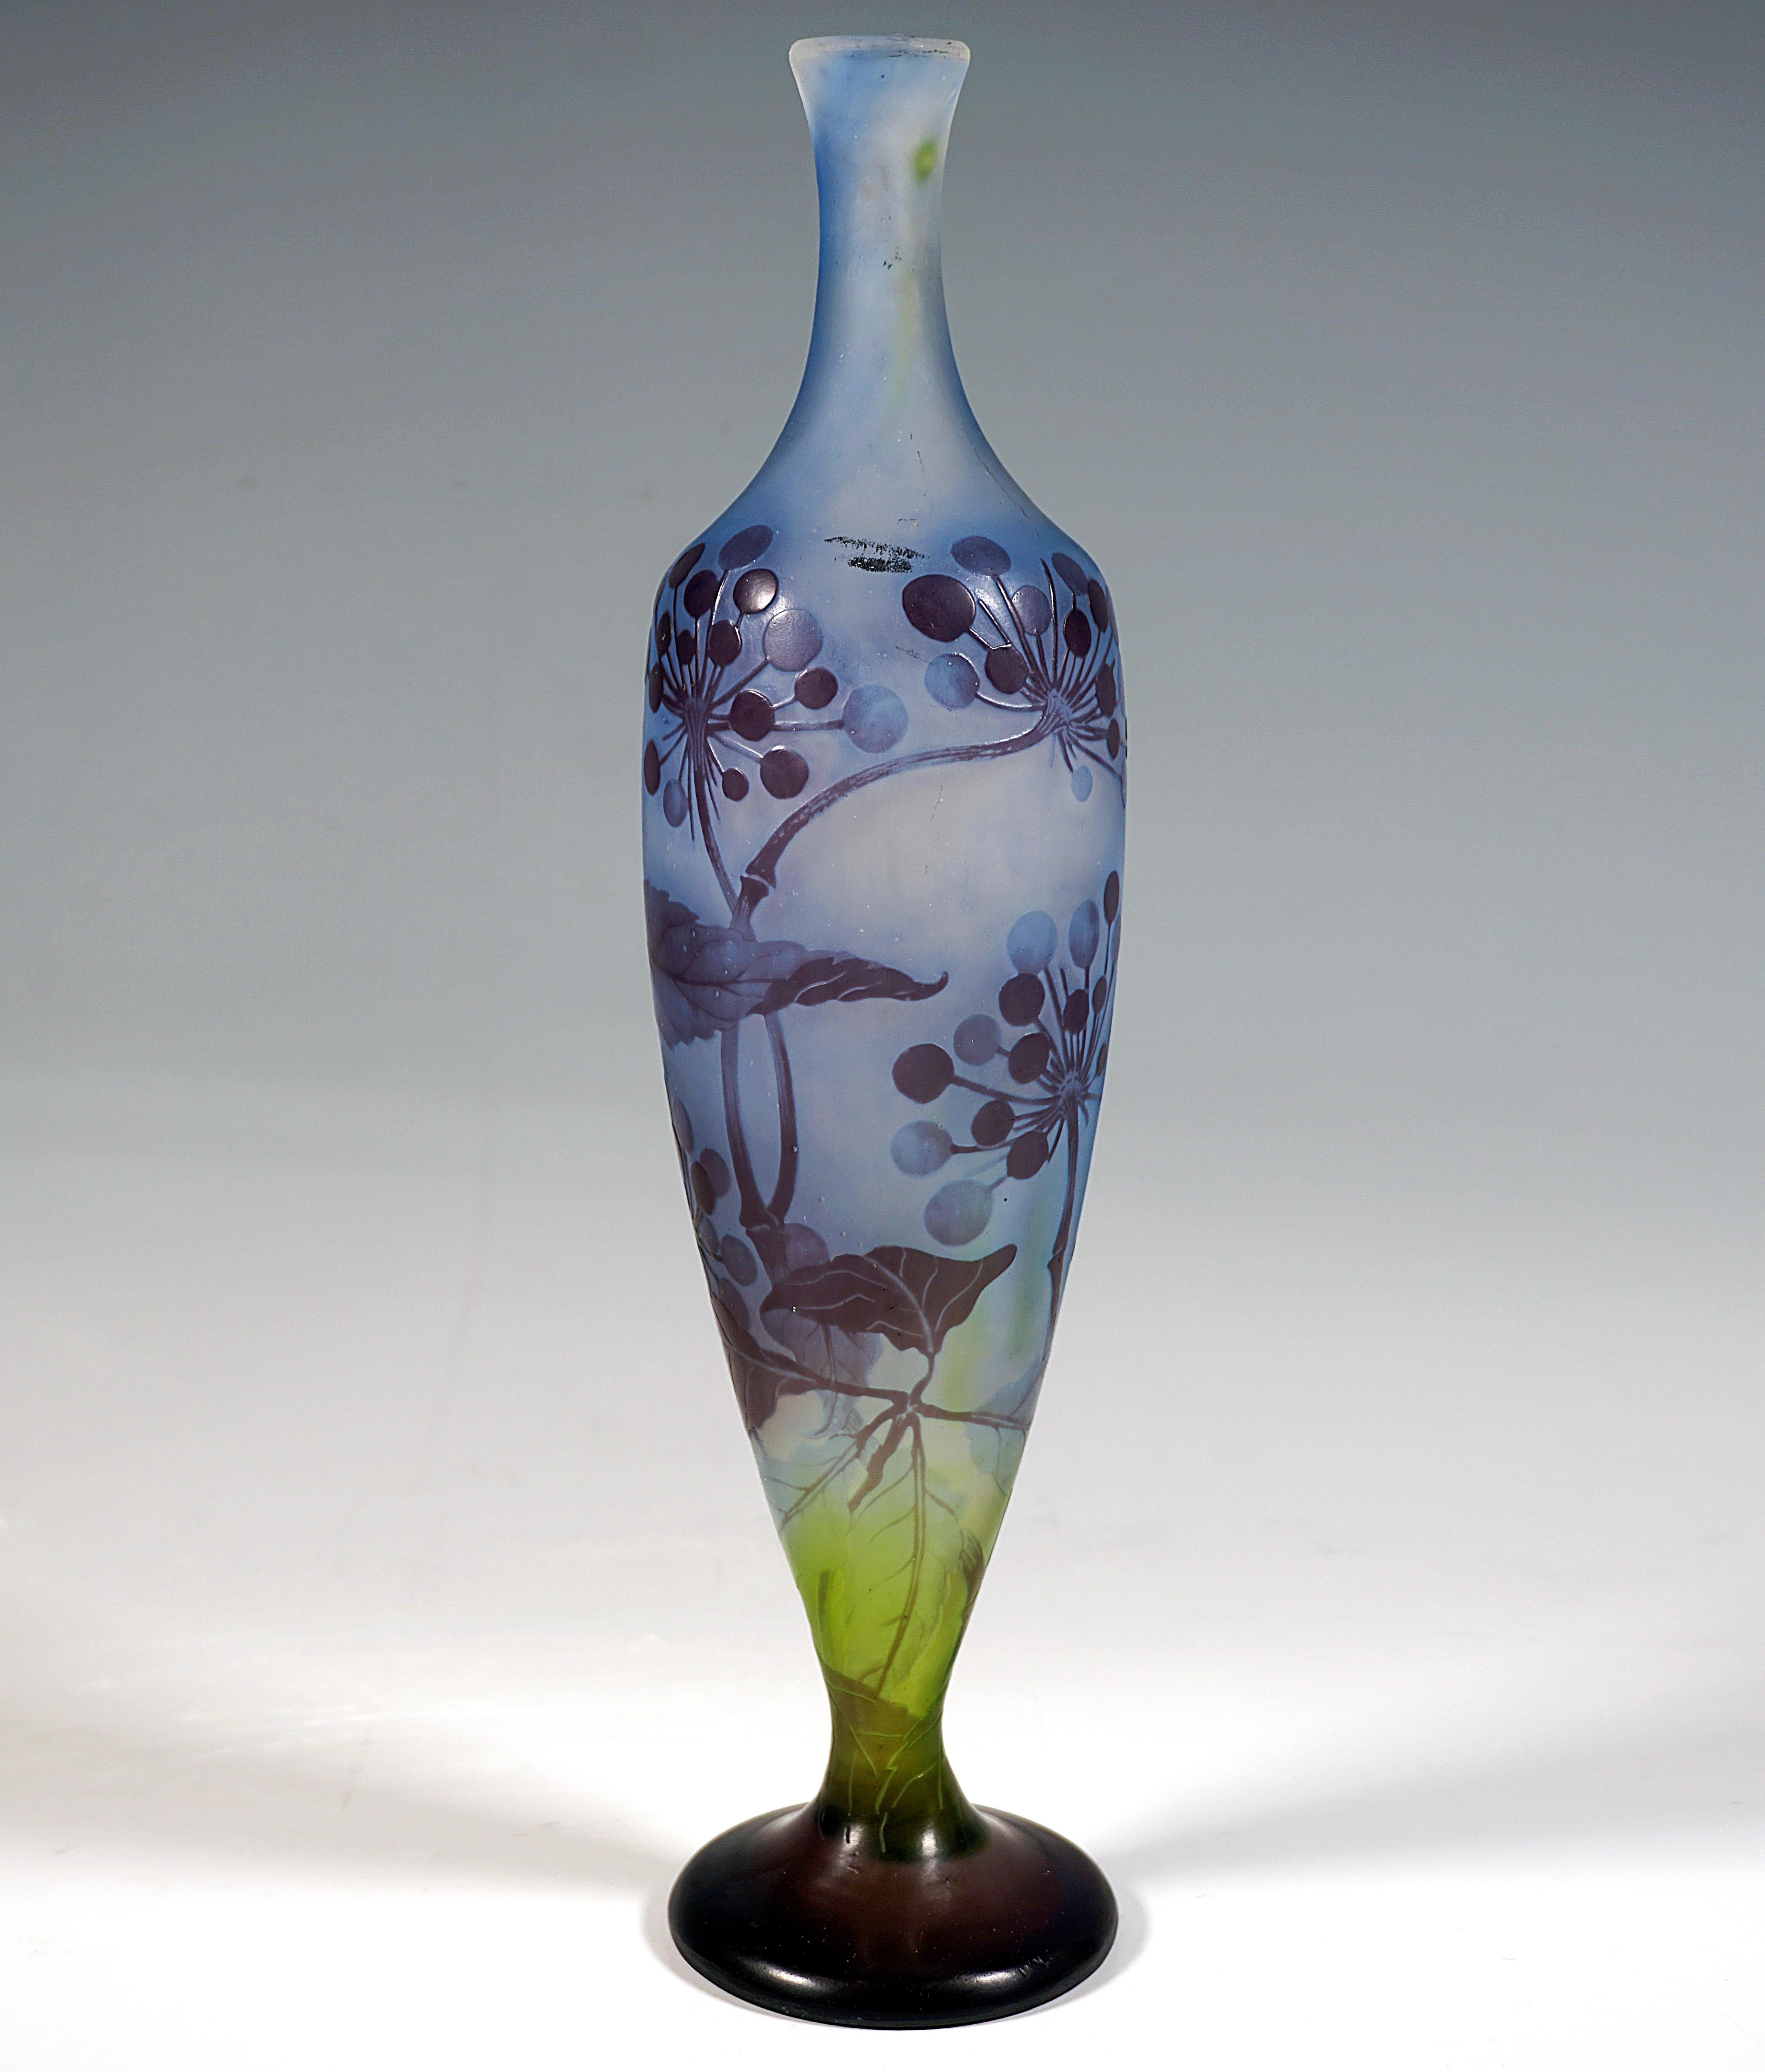 Schlanker, balusterförmiger Vasenkörper auf separatem Sockel, sich konisch nach oben verbreiternd und dann wieder verjüngend zu einem schlanken Hals mit ausgestelltem Rand, farbloses Glas mit blauen und grünen Pulvereinschlüssen, violett überfangen,